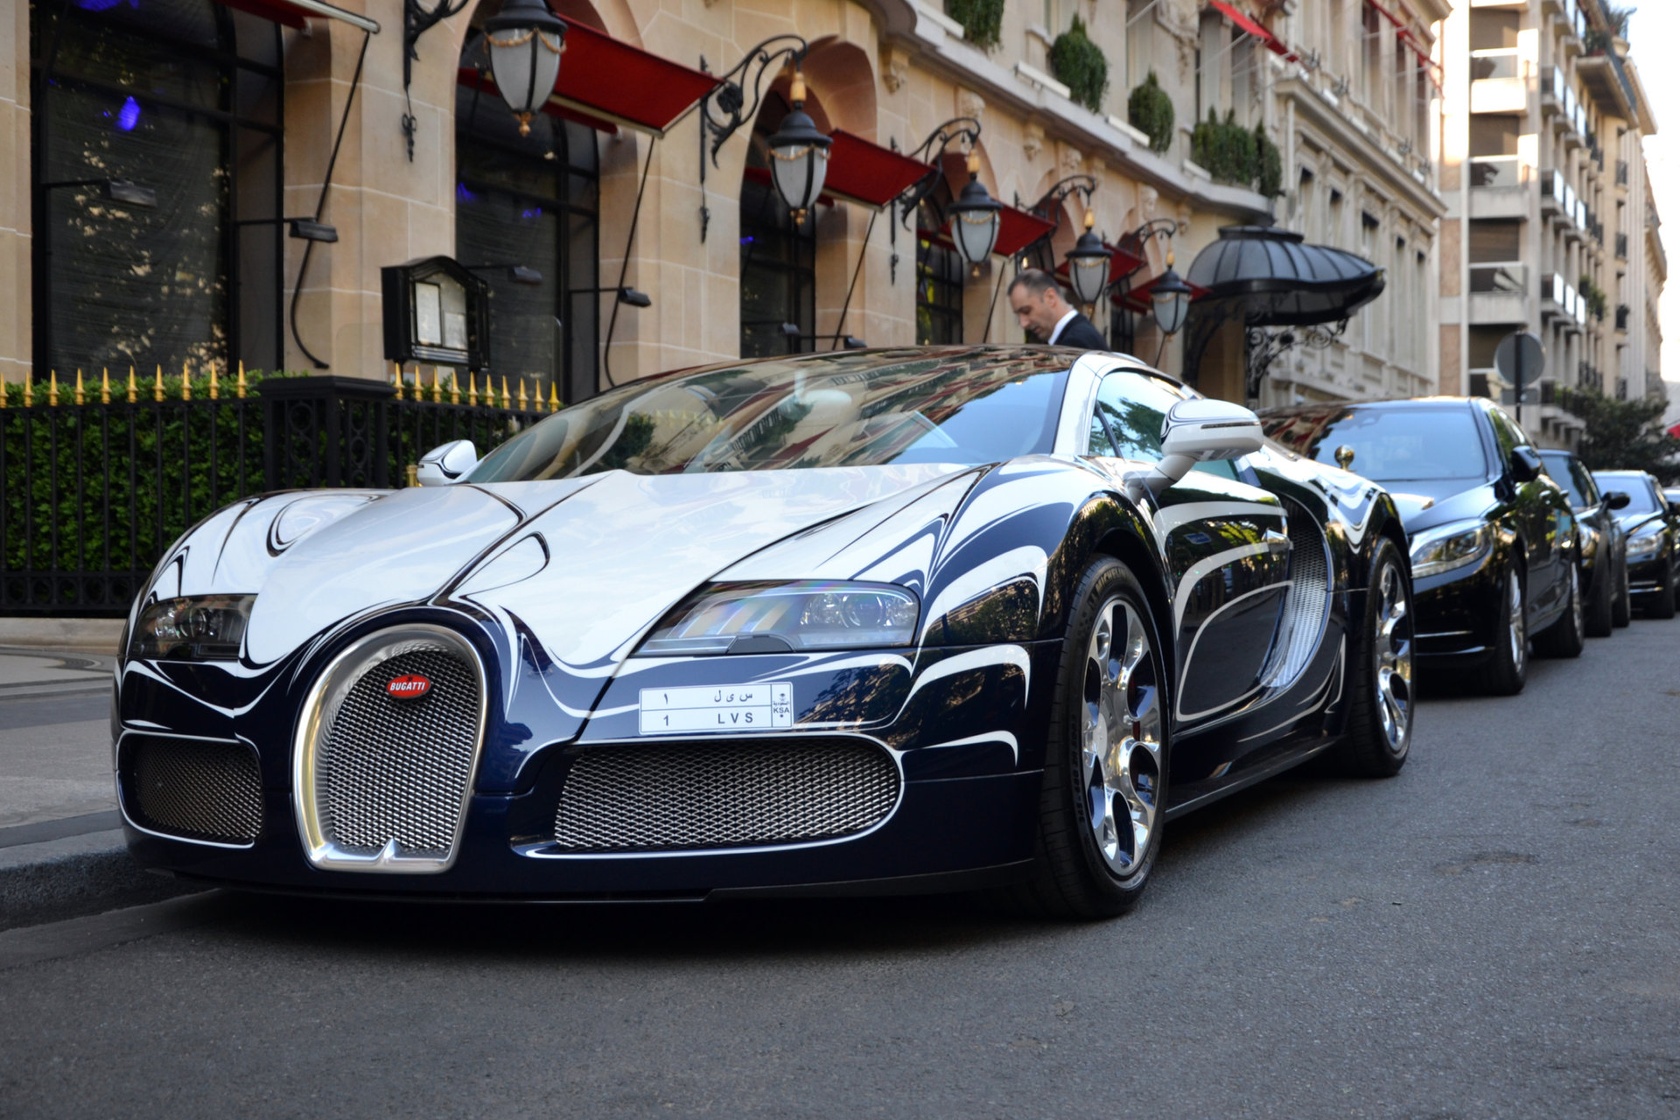 Wymiana opon w Bugatti Veyron to koszt 150 tys. złotych! Na zdj. jedyna na Świecie wersja "l'Or Blanc" ("Białe złoto") - 